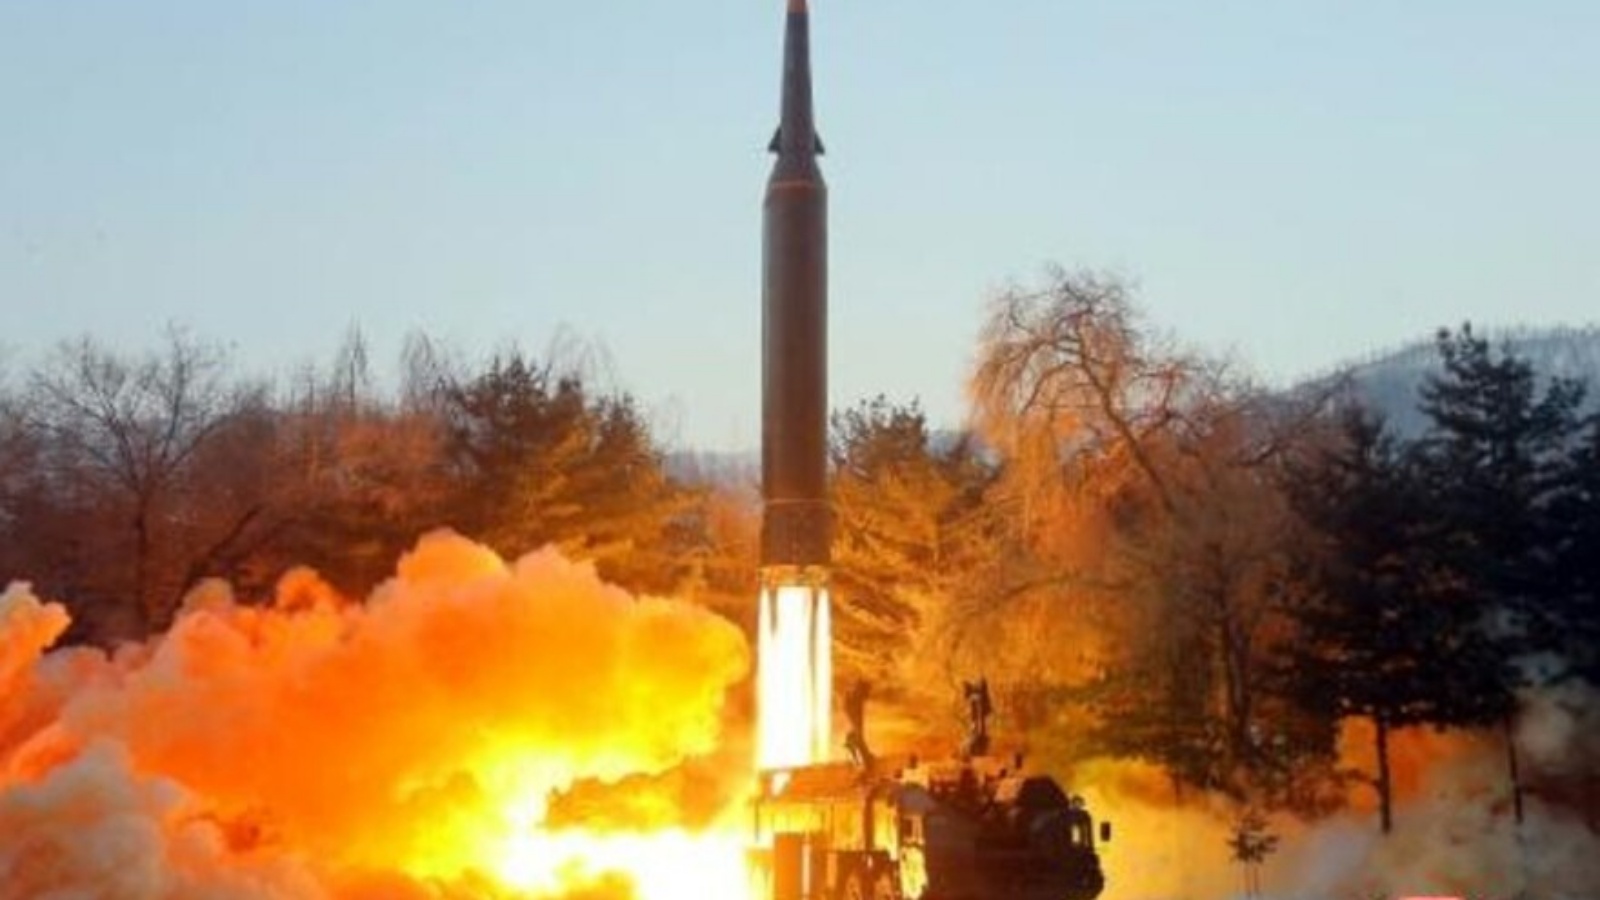 صورة نشرتها وكالة الانباء الكورية الشمالية الرسمية في يناير 2022 تظهر ما وصفته بانه اطلاق صاروخ اسرع من الصوت في 5 من الشهر من مكان غير معروف في كوريا الشمالية